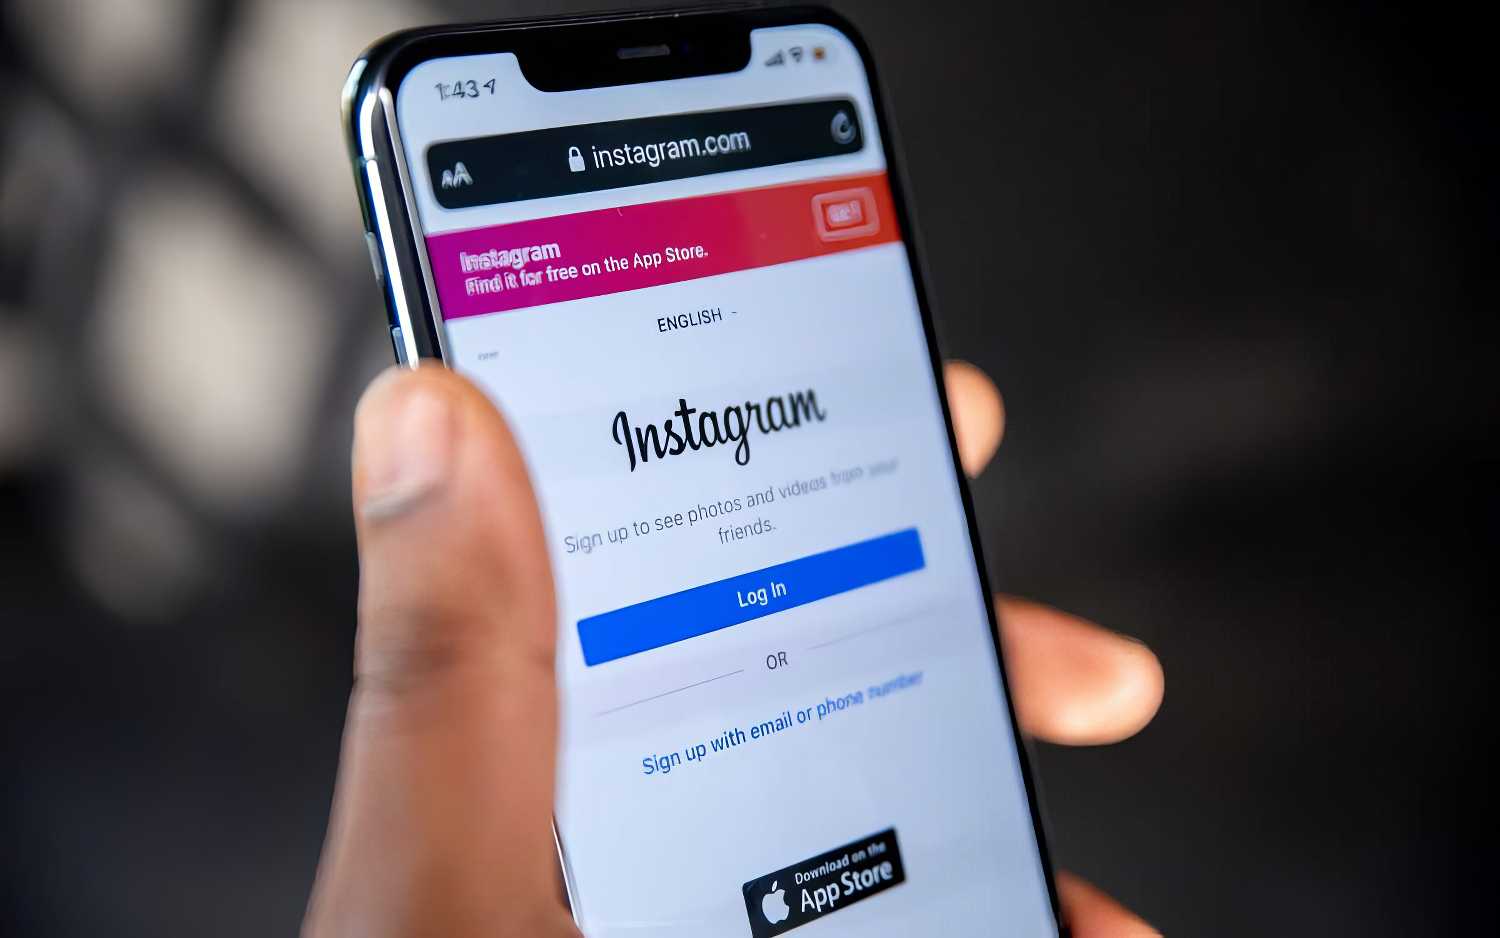 Guide complet pour supprimer votre compte Instagram et comprendre son utilité